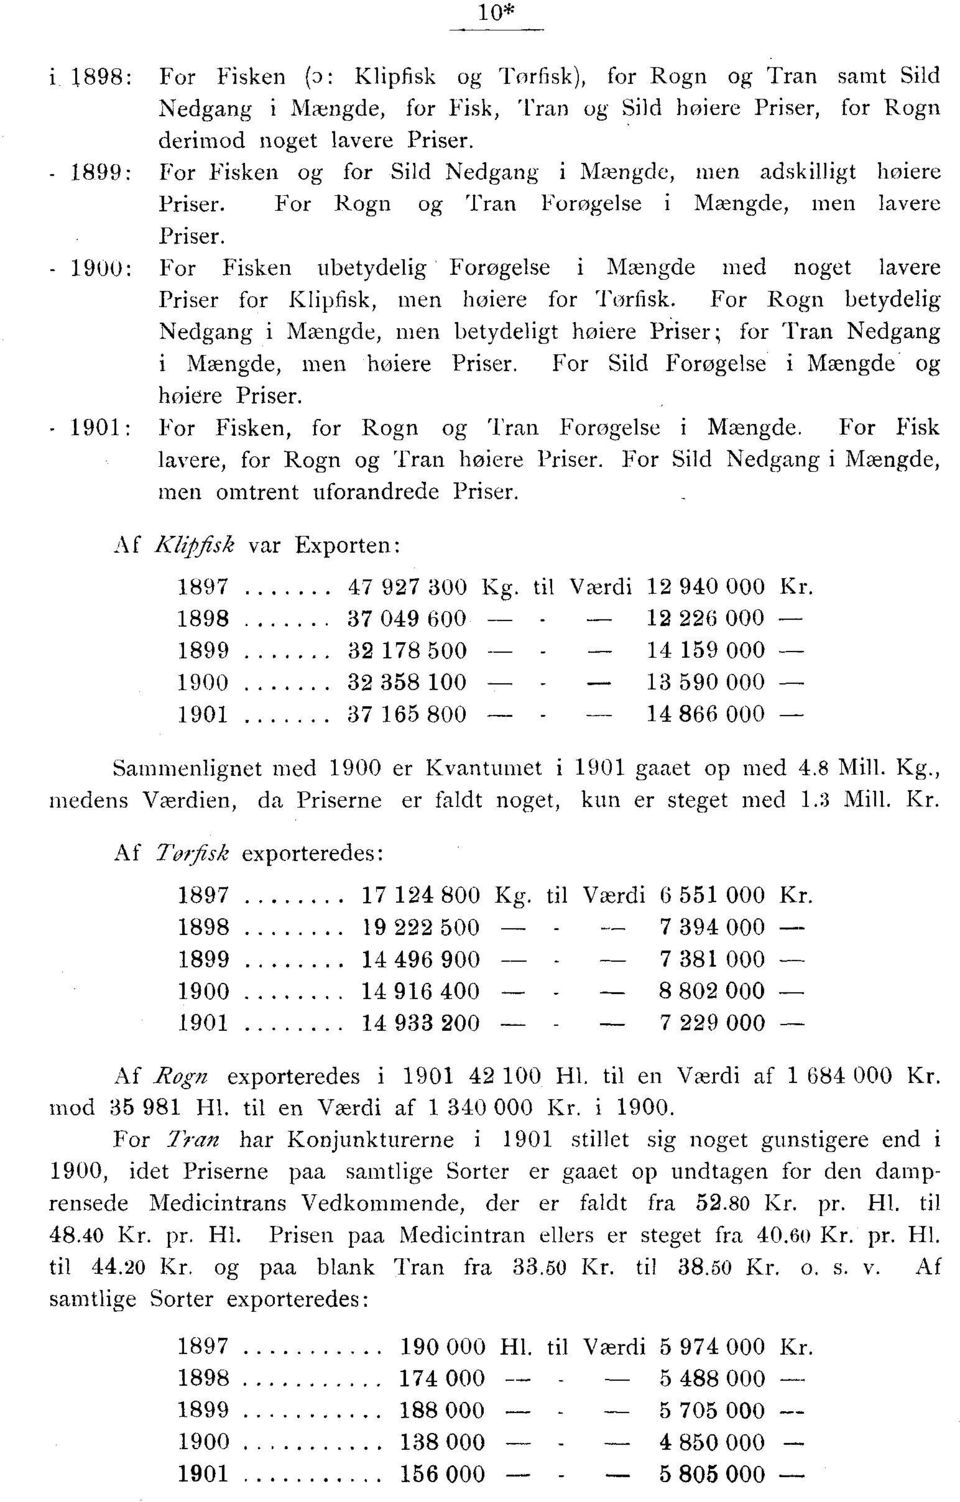 1900: For Fisken ubetydelig Forøgelse i Mængde med noget lavere Priser for Klipfisk, men højere for Tørfisk.